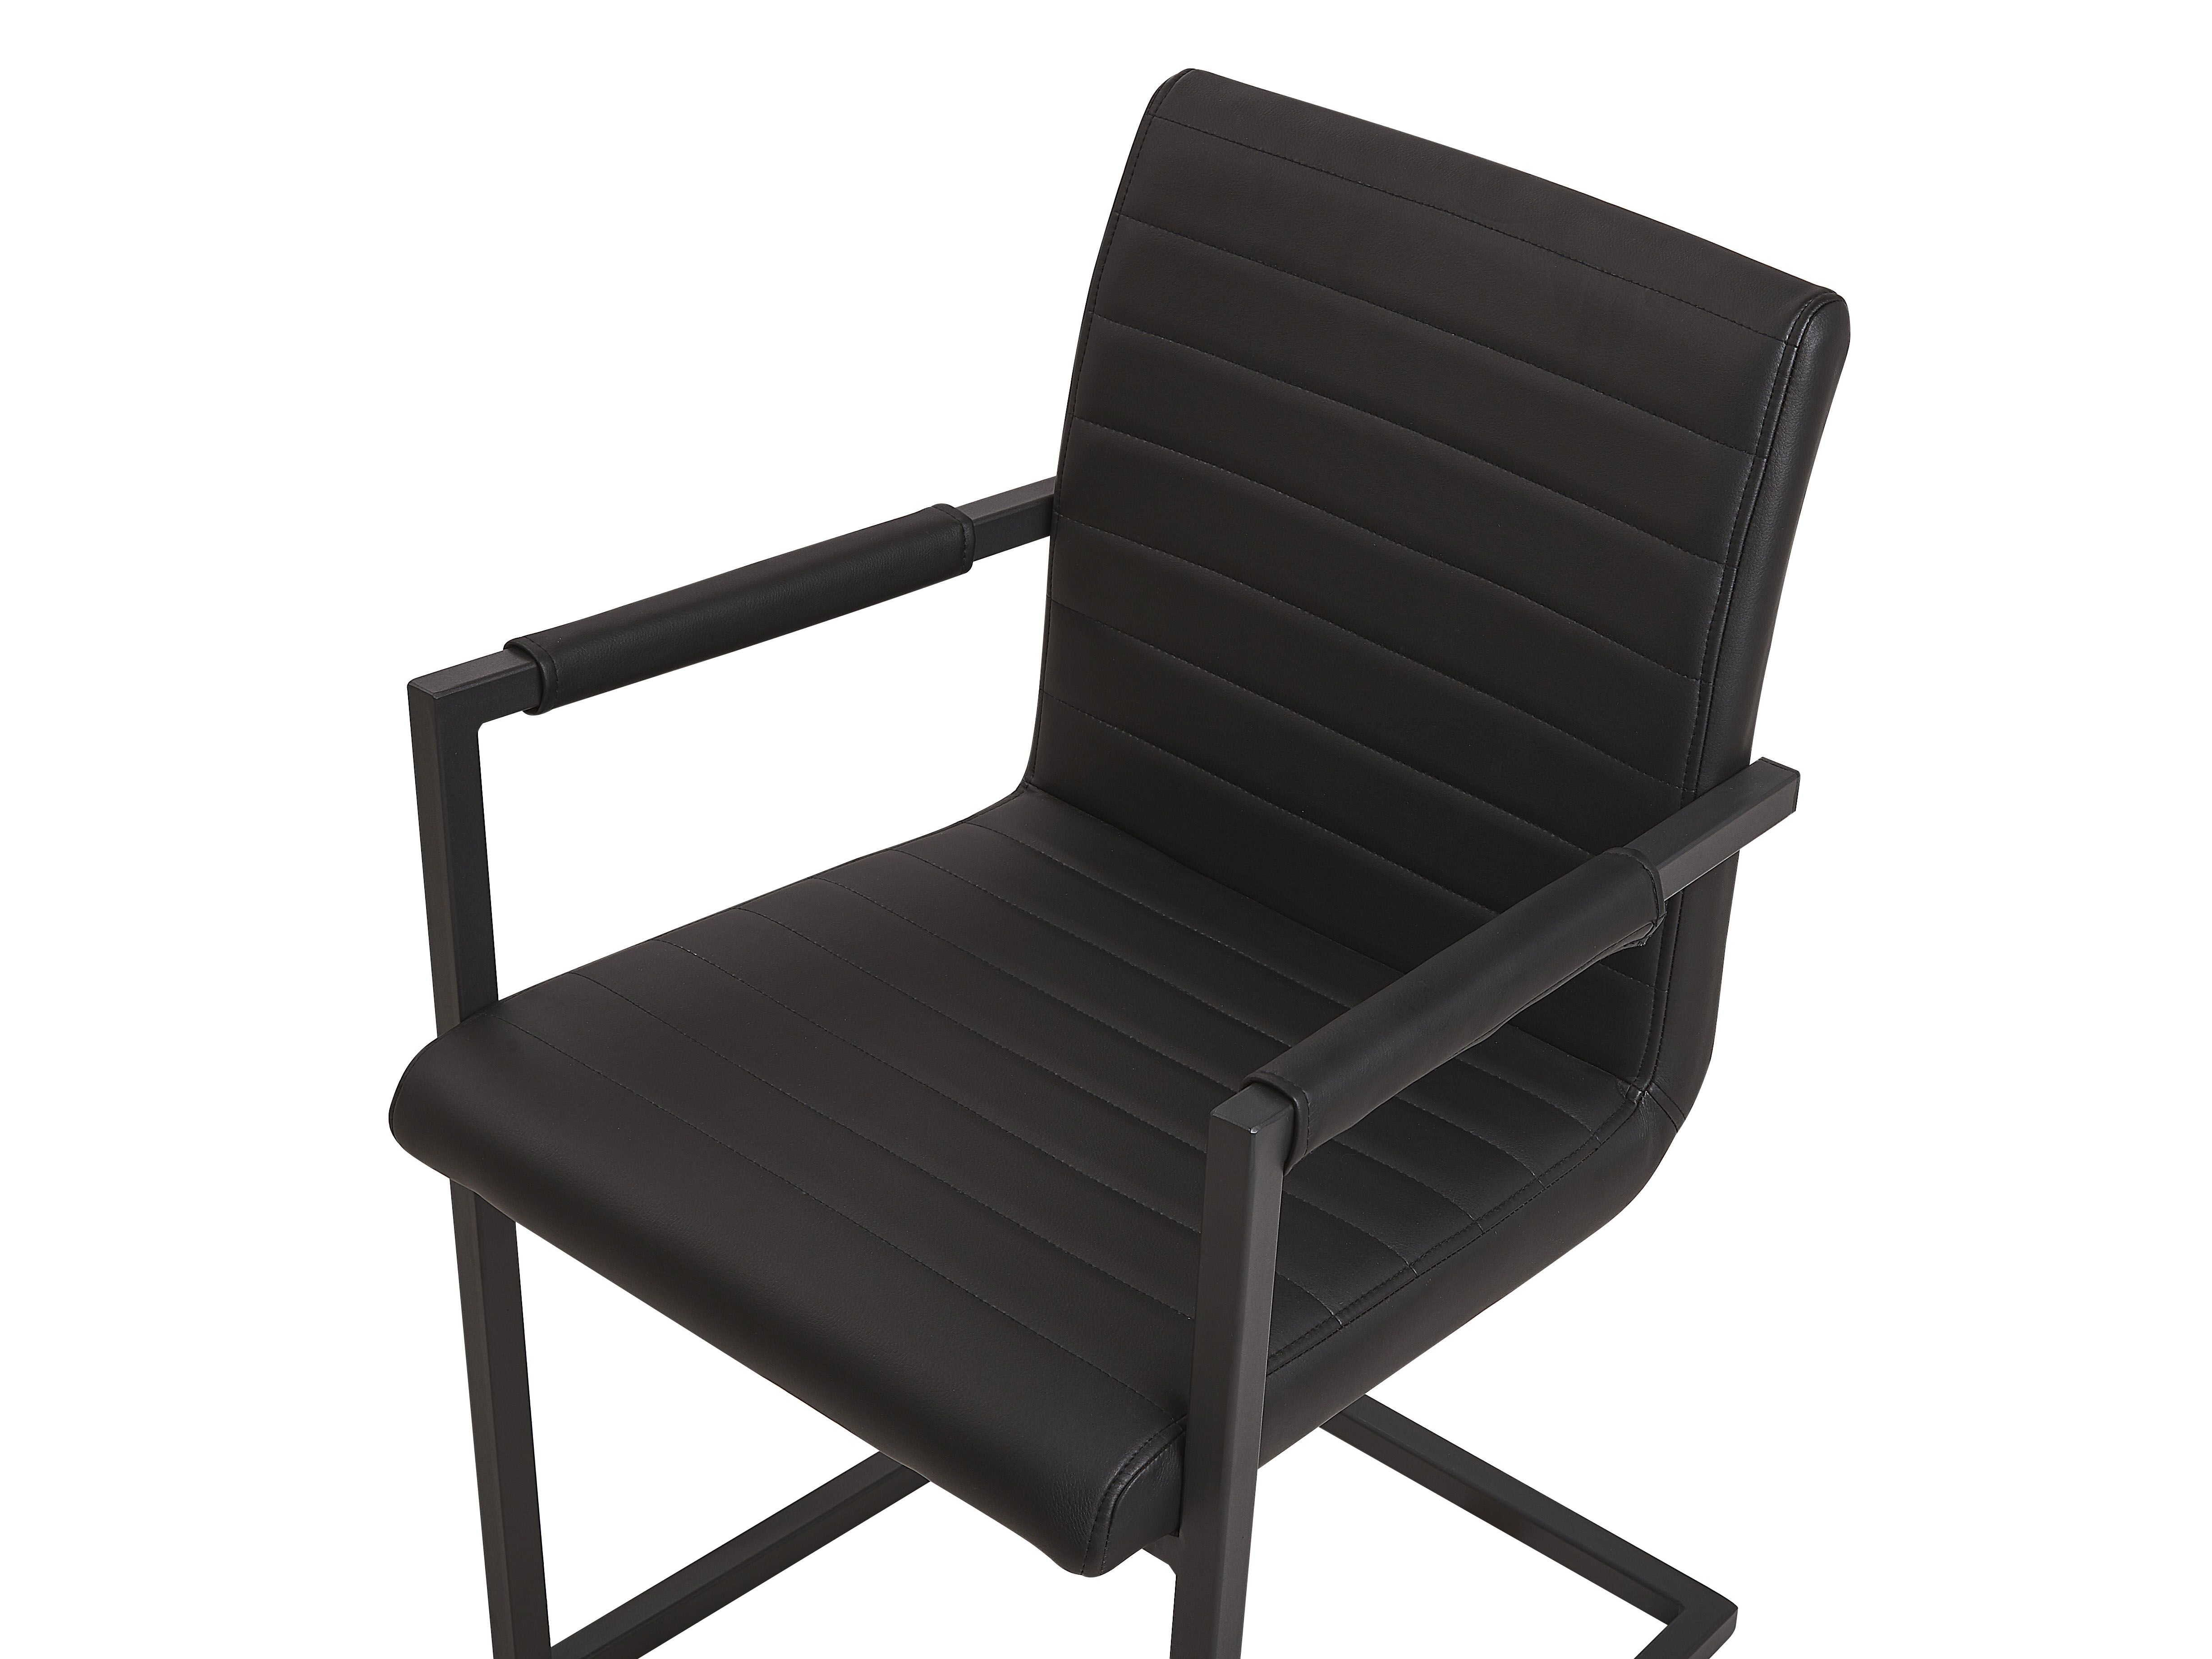 Set 2 ks. jídelních židlí BAFORA (černá)